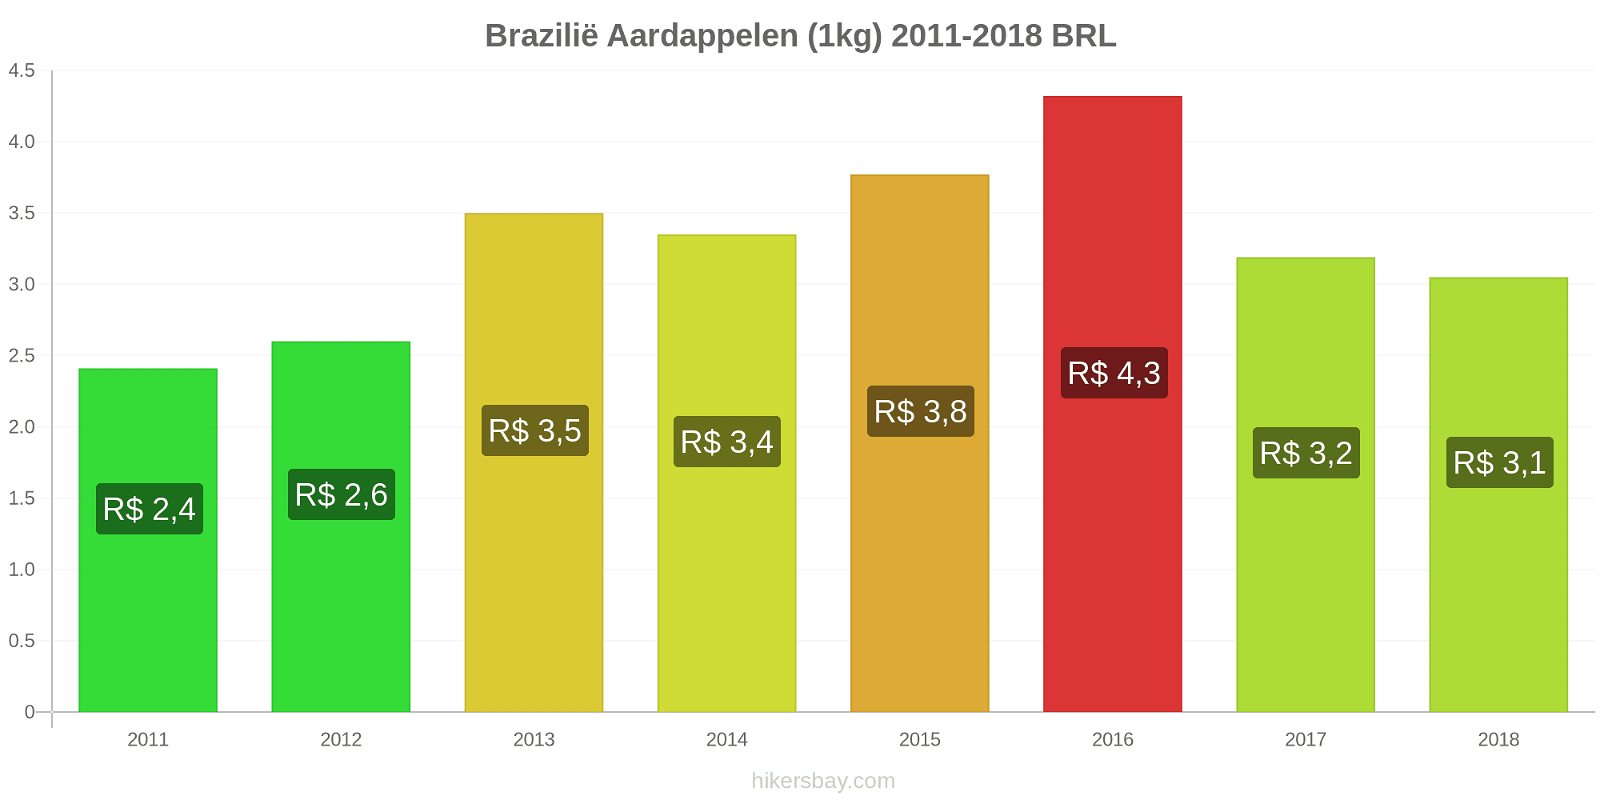 Brazilië prijswijzigingen Aardappelen (1kg) hikersbay.com